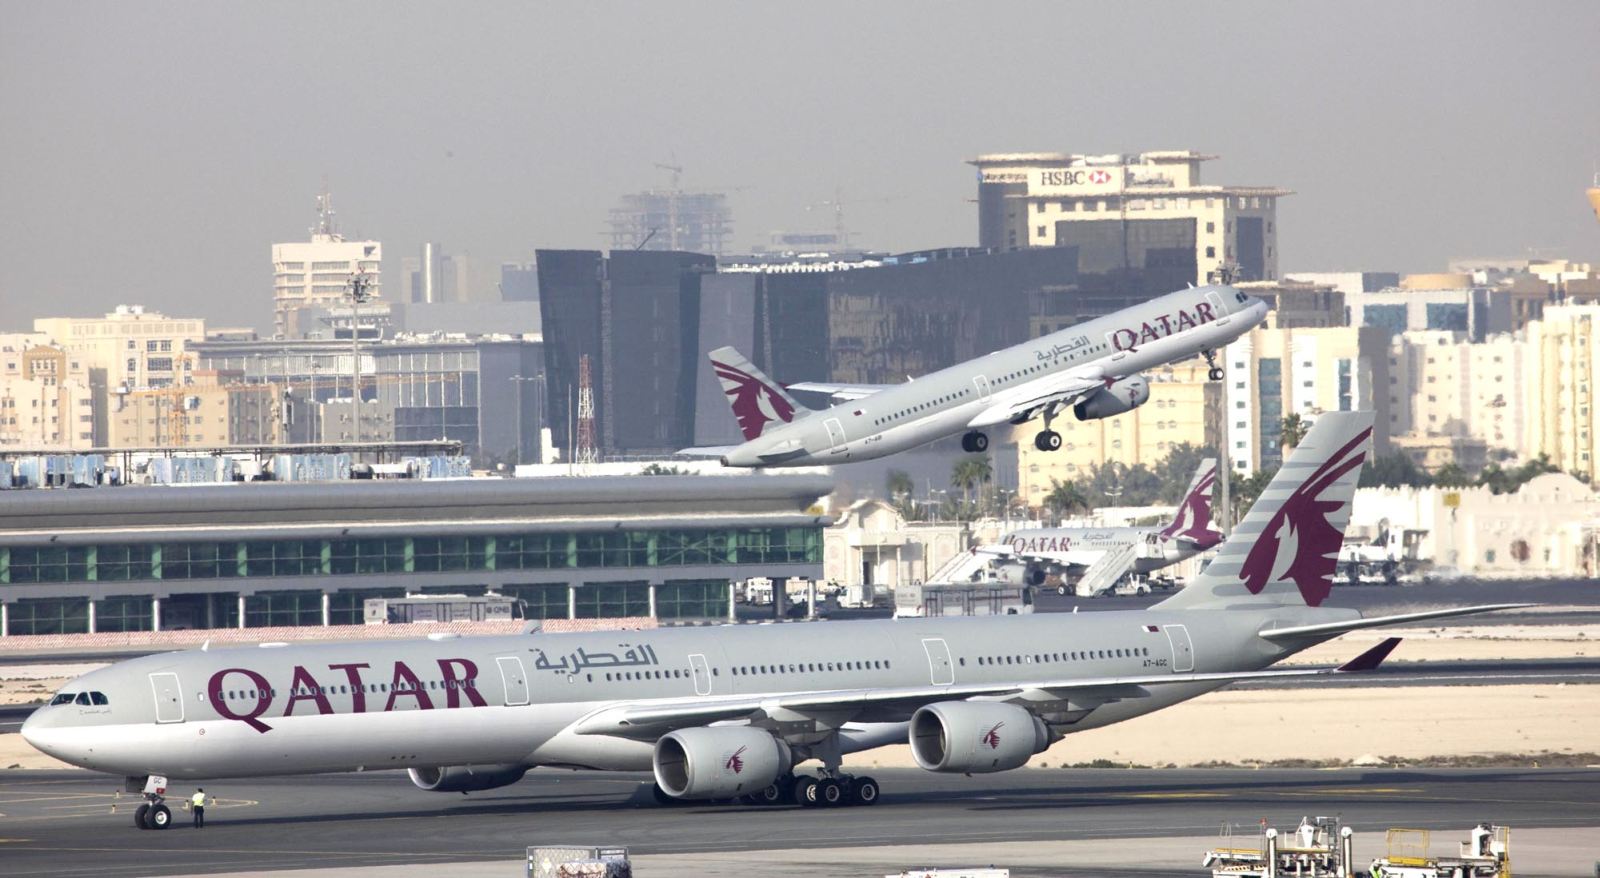 Nemcsak a légitársaságnak fontos a változás: az új dohai reptér már megnyitása előtt még jelentősebb légikikötőnek minősül, ha egy globális szövetség egyik központja lesz <br>(fotó: Qatar Airways)